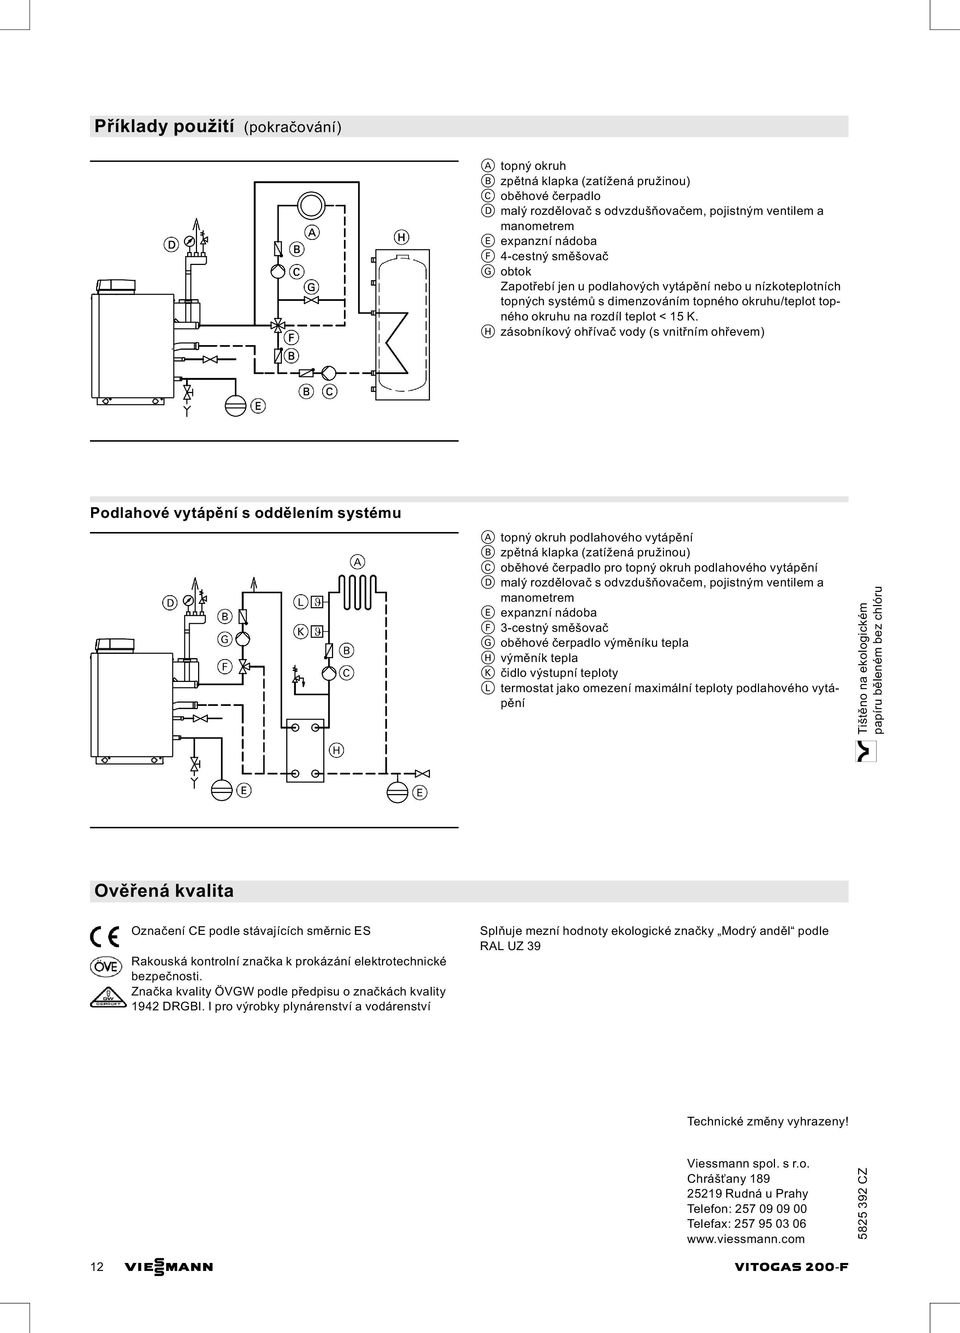 H zásobníkový ohřívač vody (s vnitřním ohřevem) Podlahové vytápění s oddělením systému Ověřená kvalita Označení CE podle stávajících směrnic ES Rakouská kontrolní značka k prokázání elektrotechnické